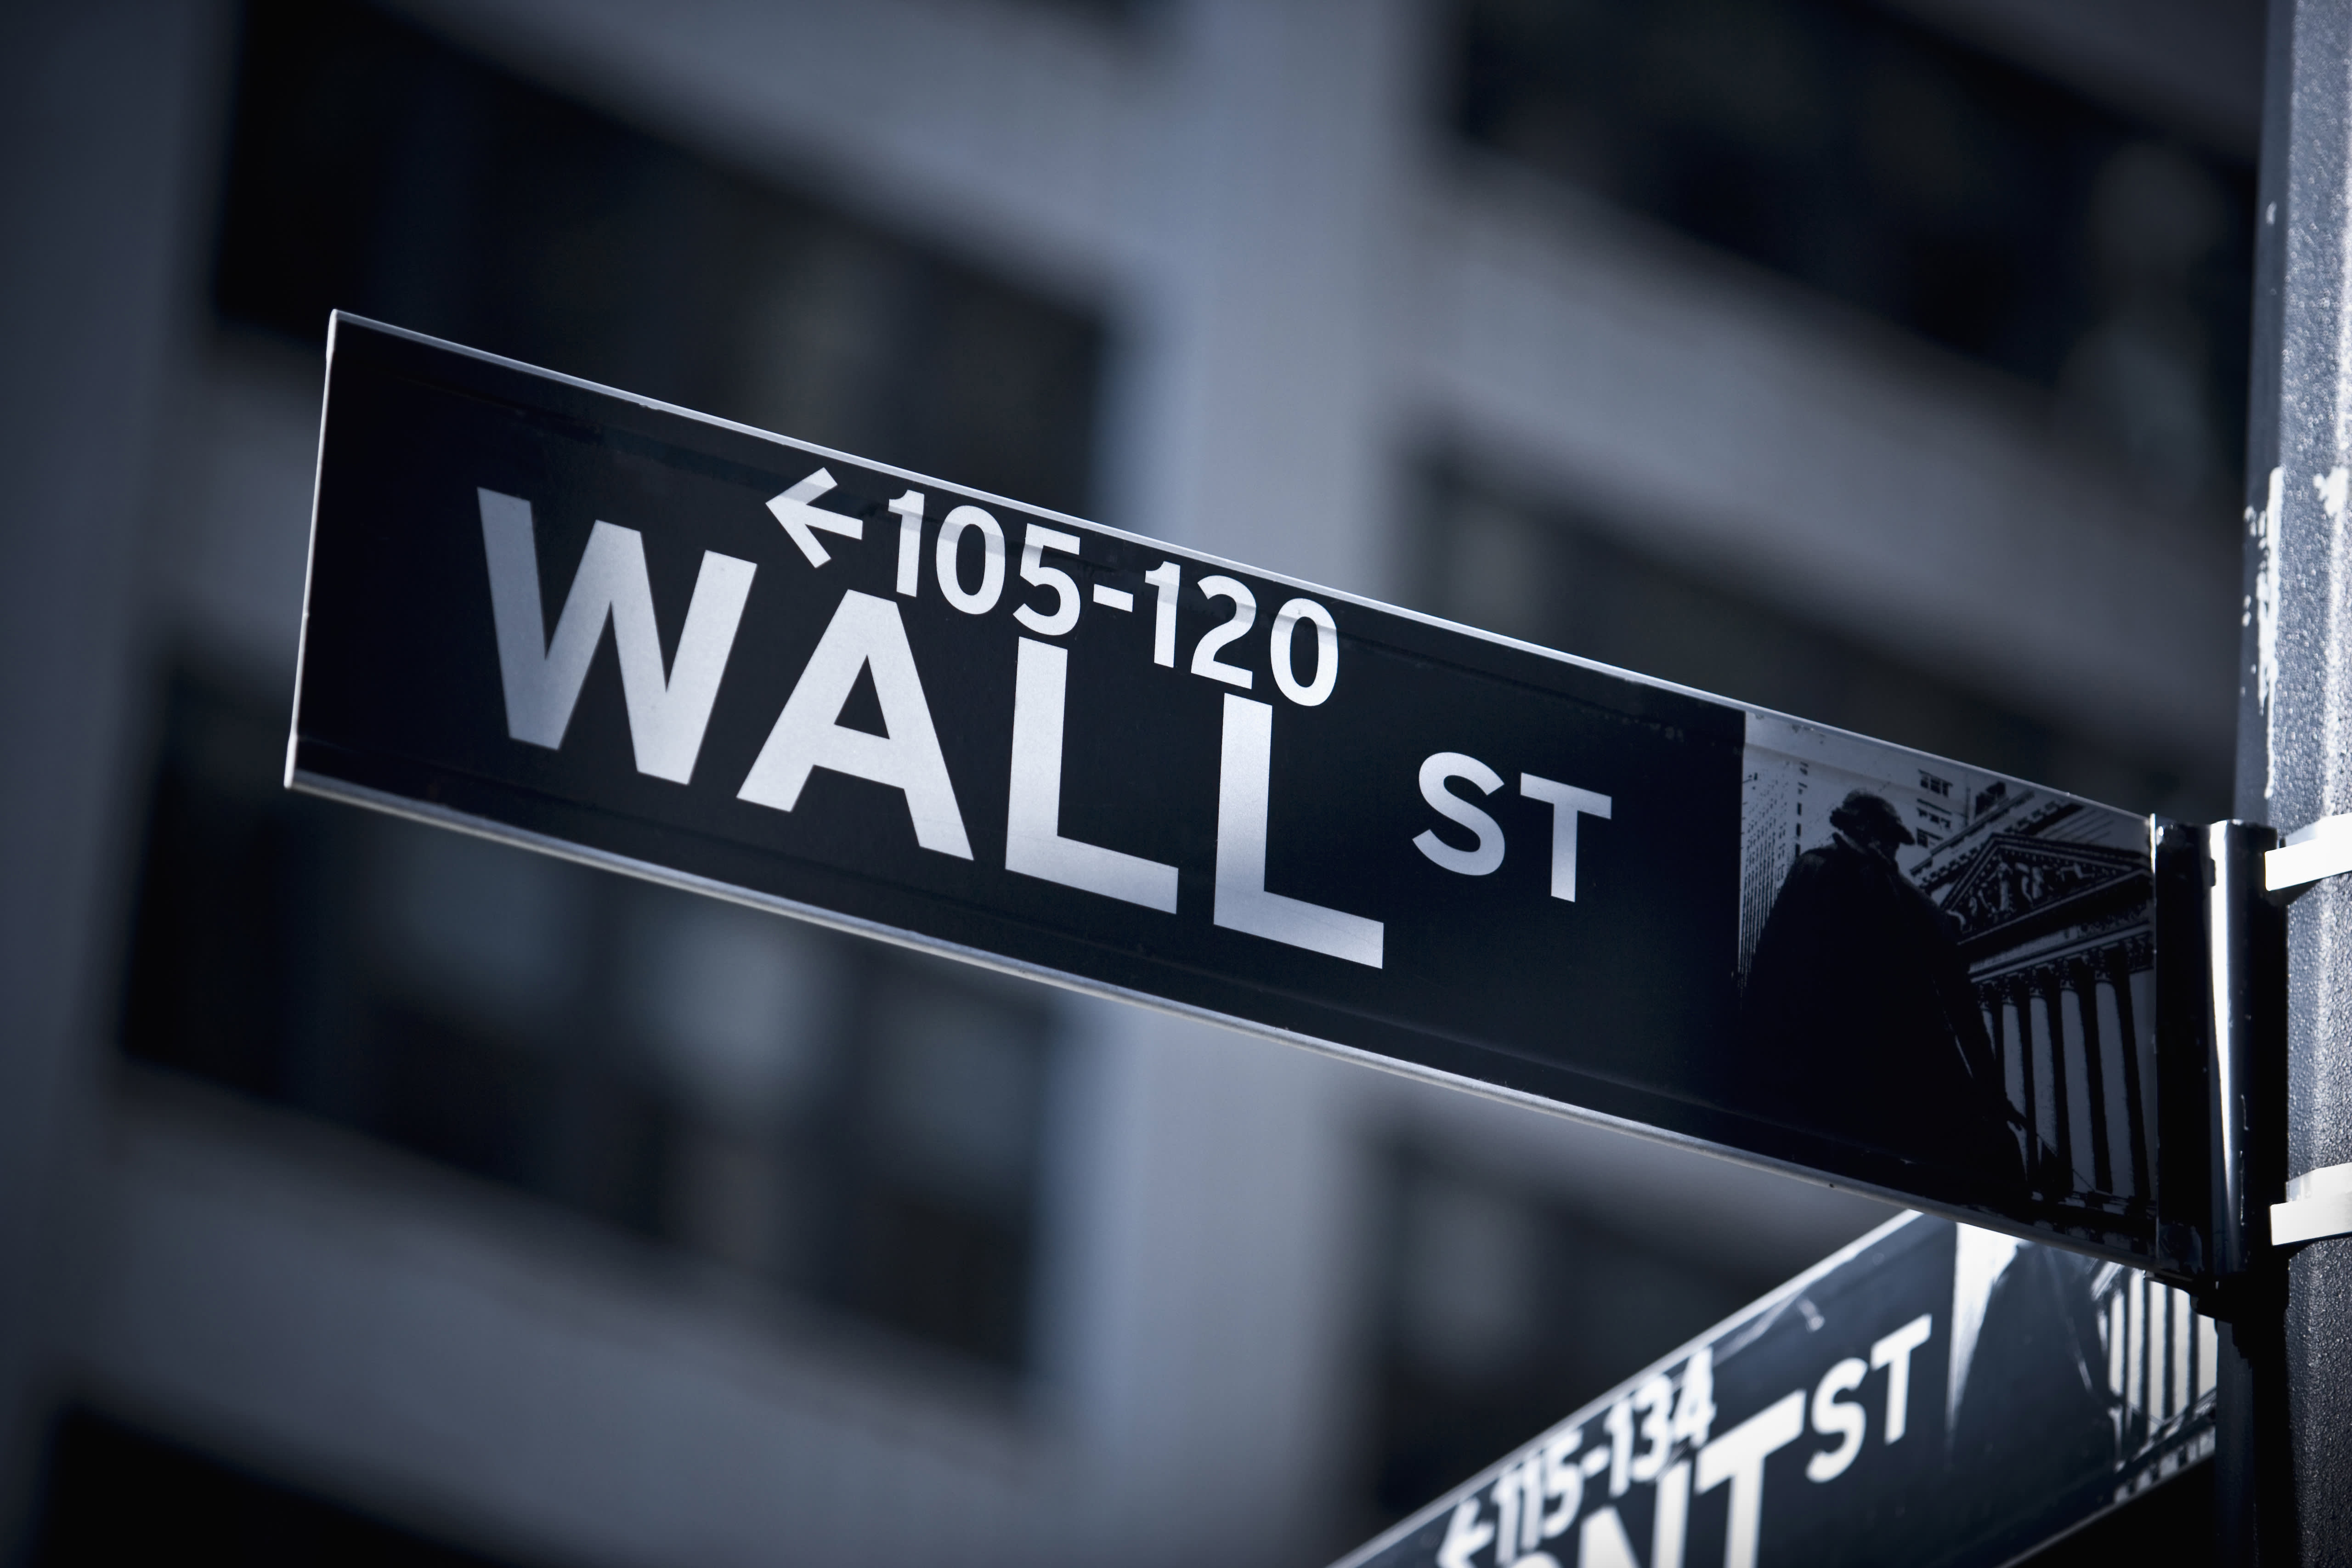 Darknet Wall Street Market